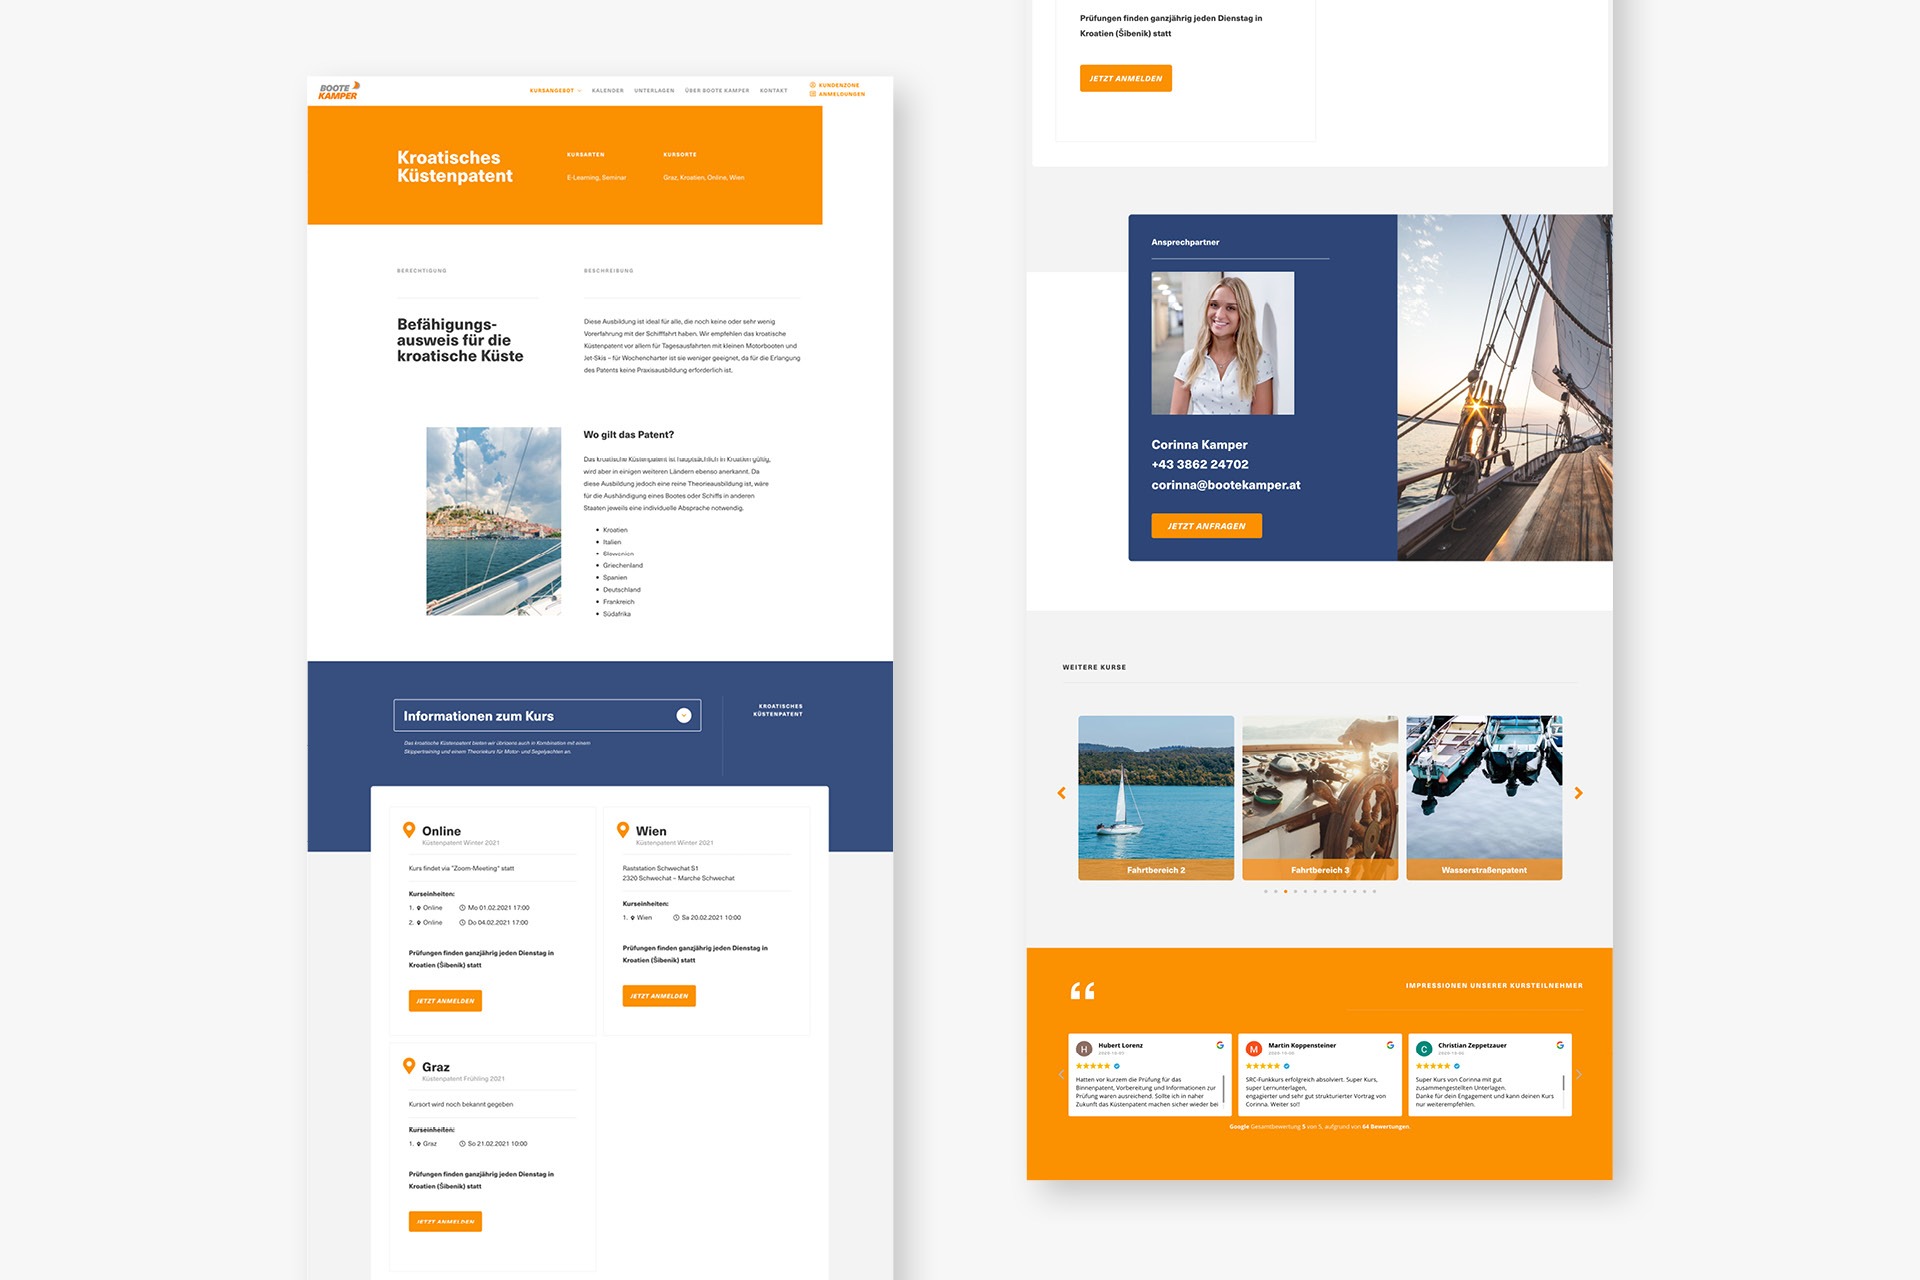 Ein Website-Design für ein Reisebüro, das auf Bootscamping spezialisiert ist.